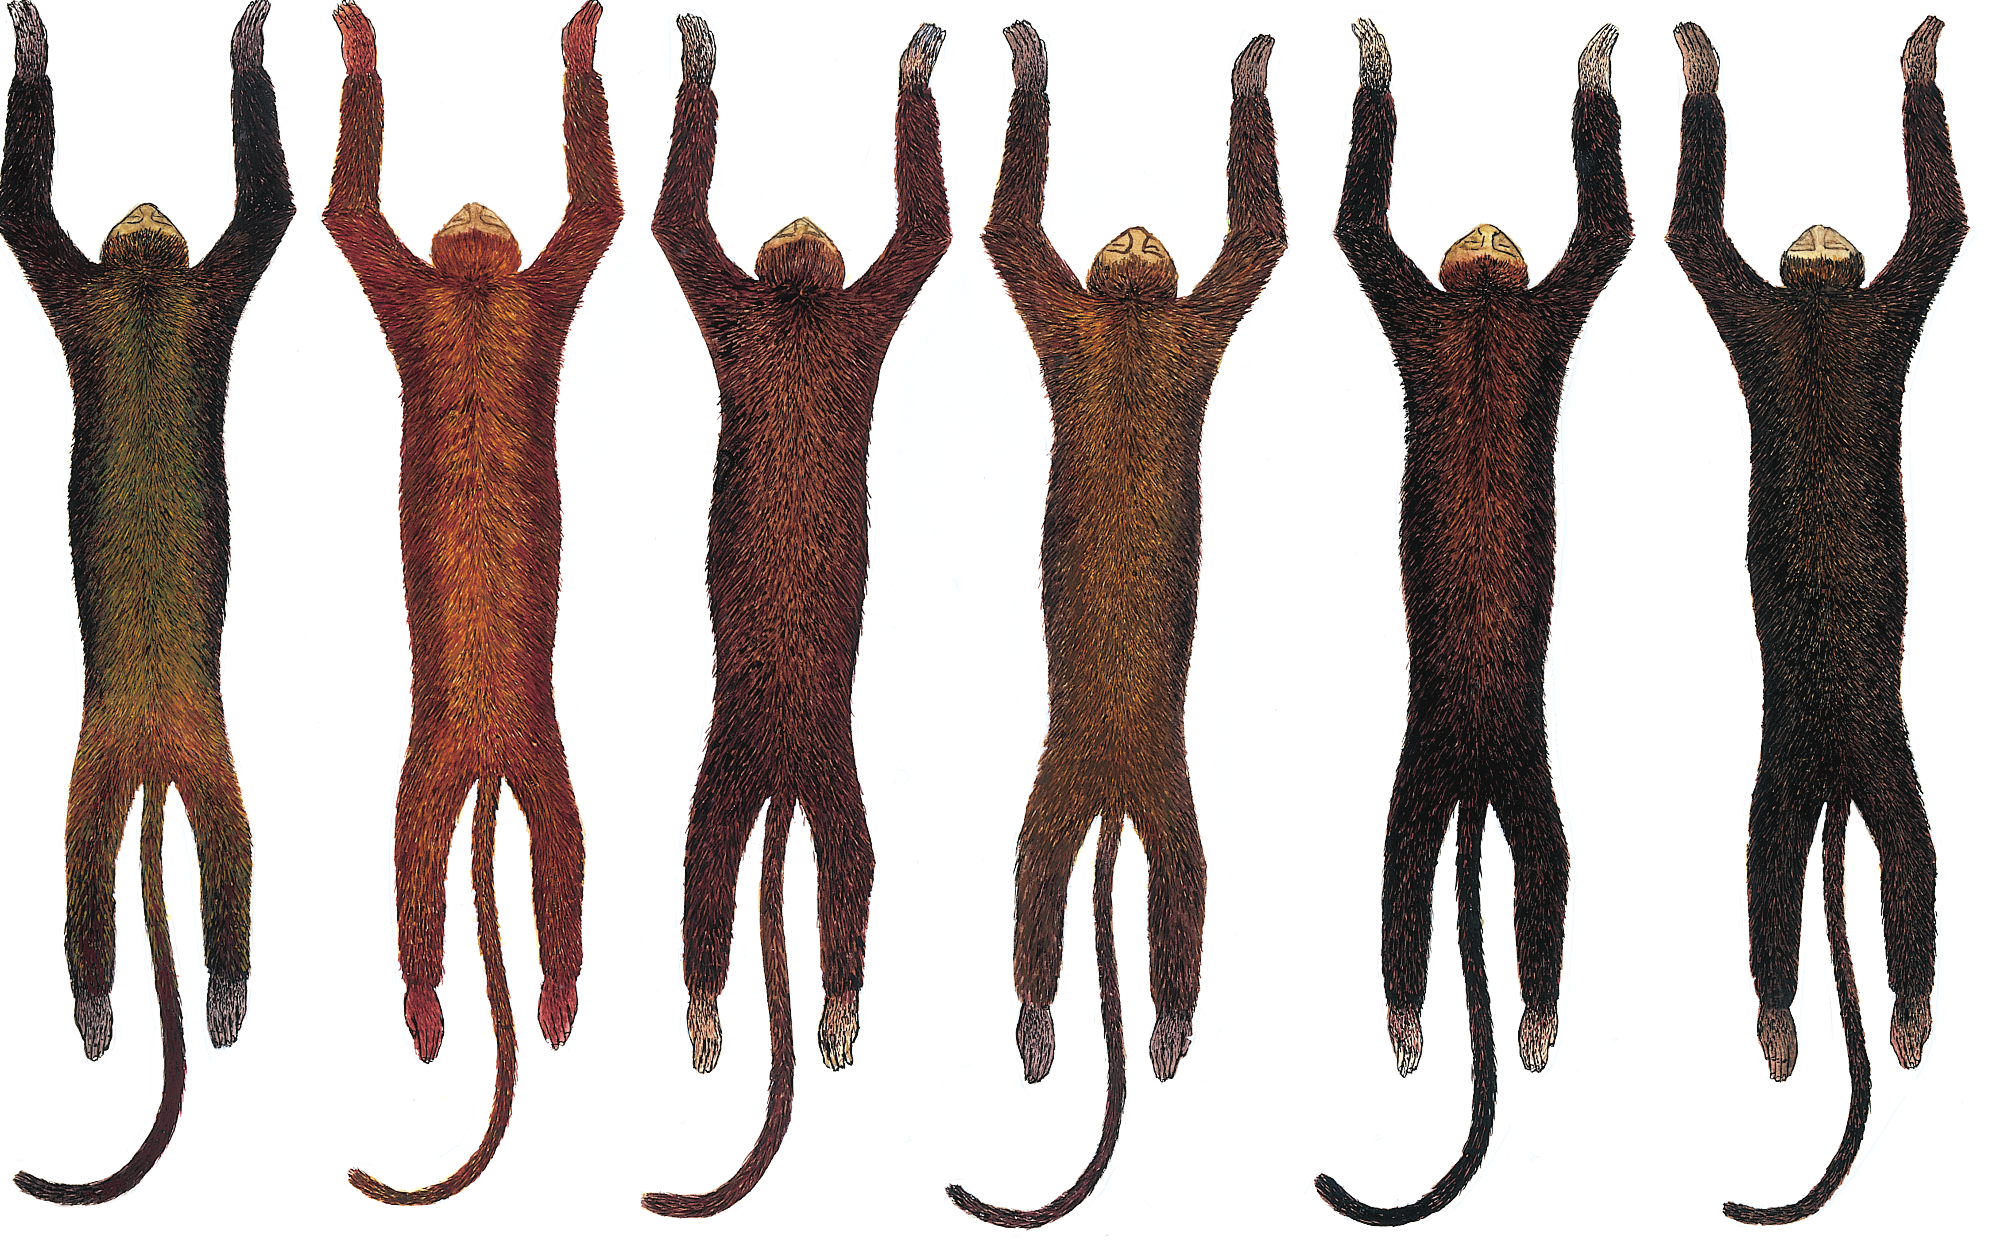 80 R. Gregorin 10 11 12 13 14 15 Figuras 10-15. Ilustração, em vista dorsal, mostrando os padrões mais freqüentes de coloração da pelagem em A. fusca (Fig. 10) e A. clamitans (Figs 11-15).